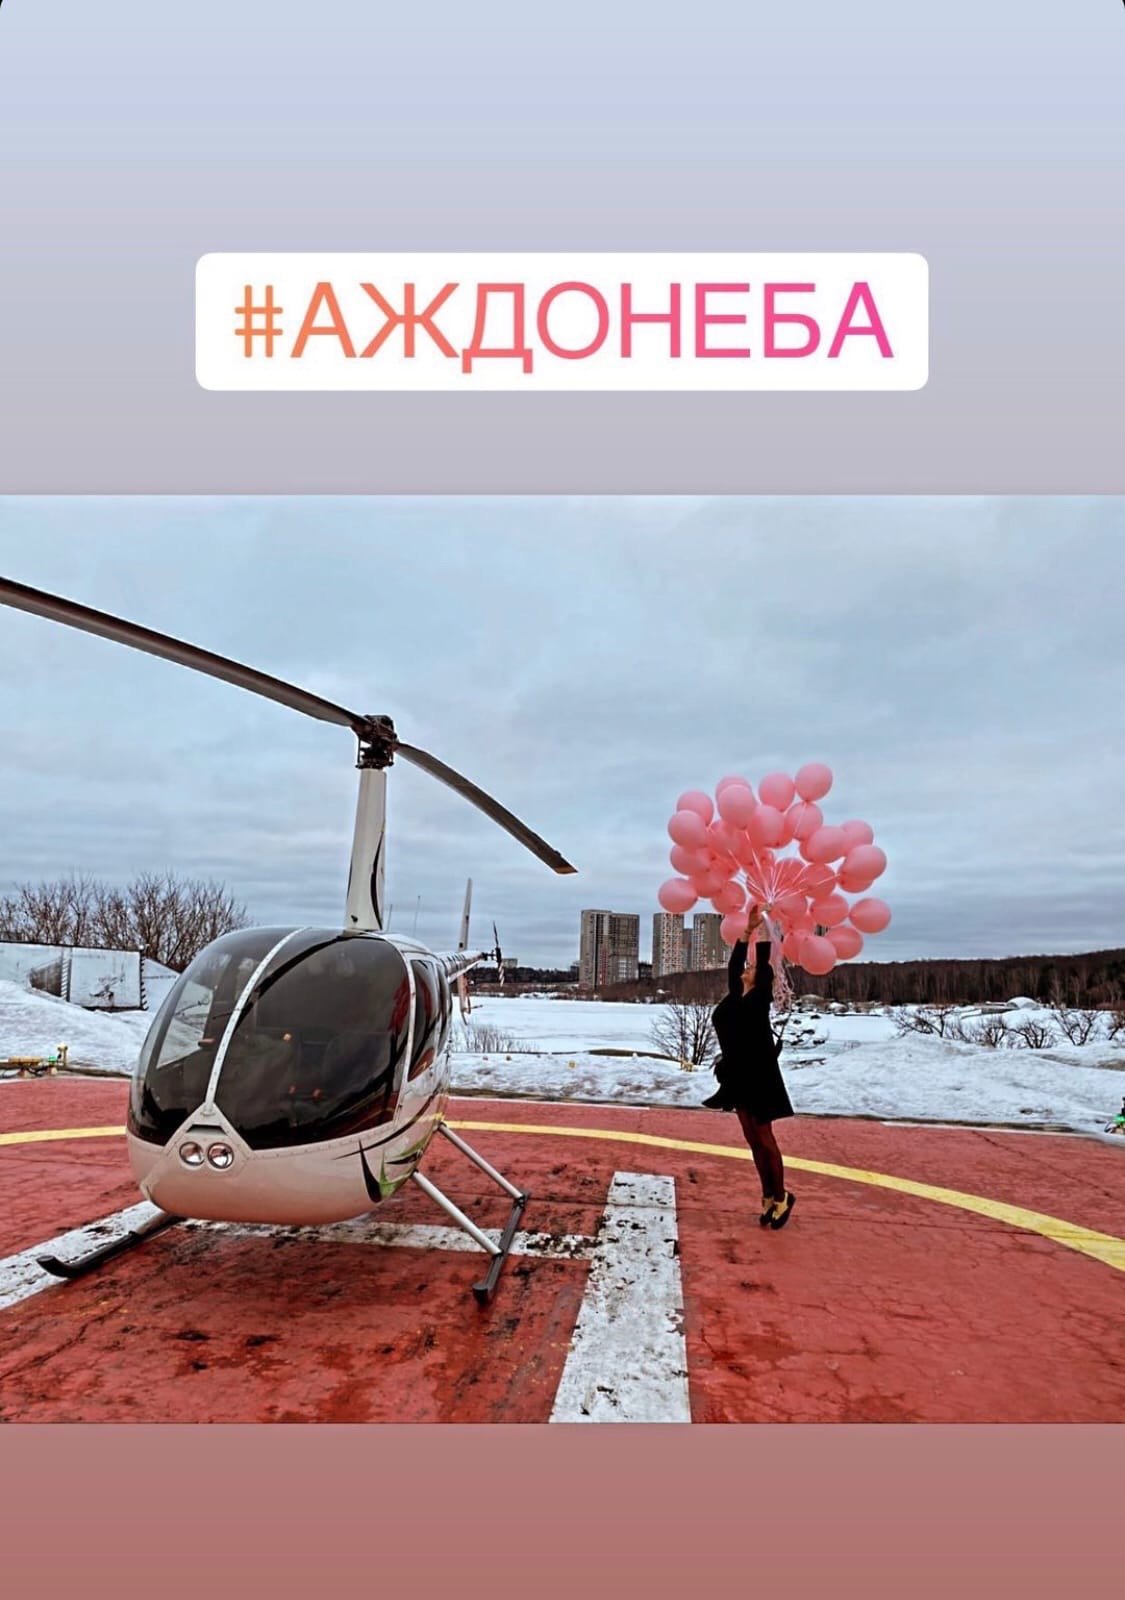 Мирослава Карпович полетала на вертолете в свой день рождения